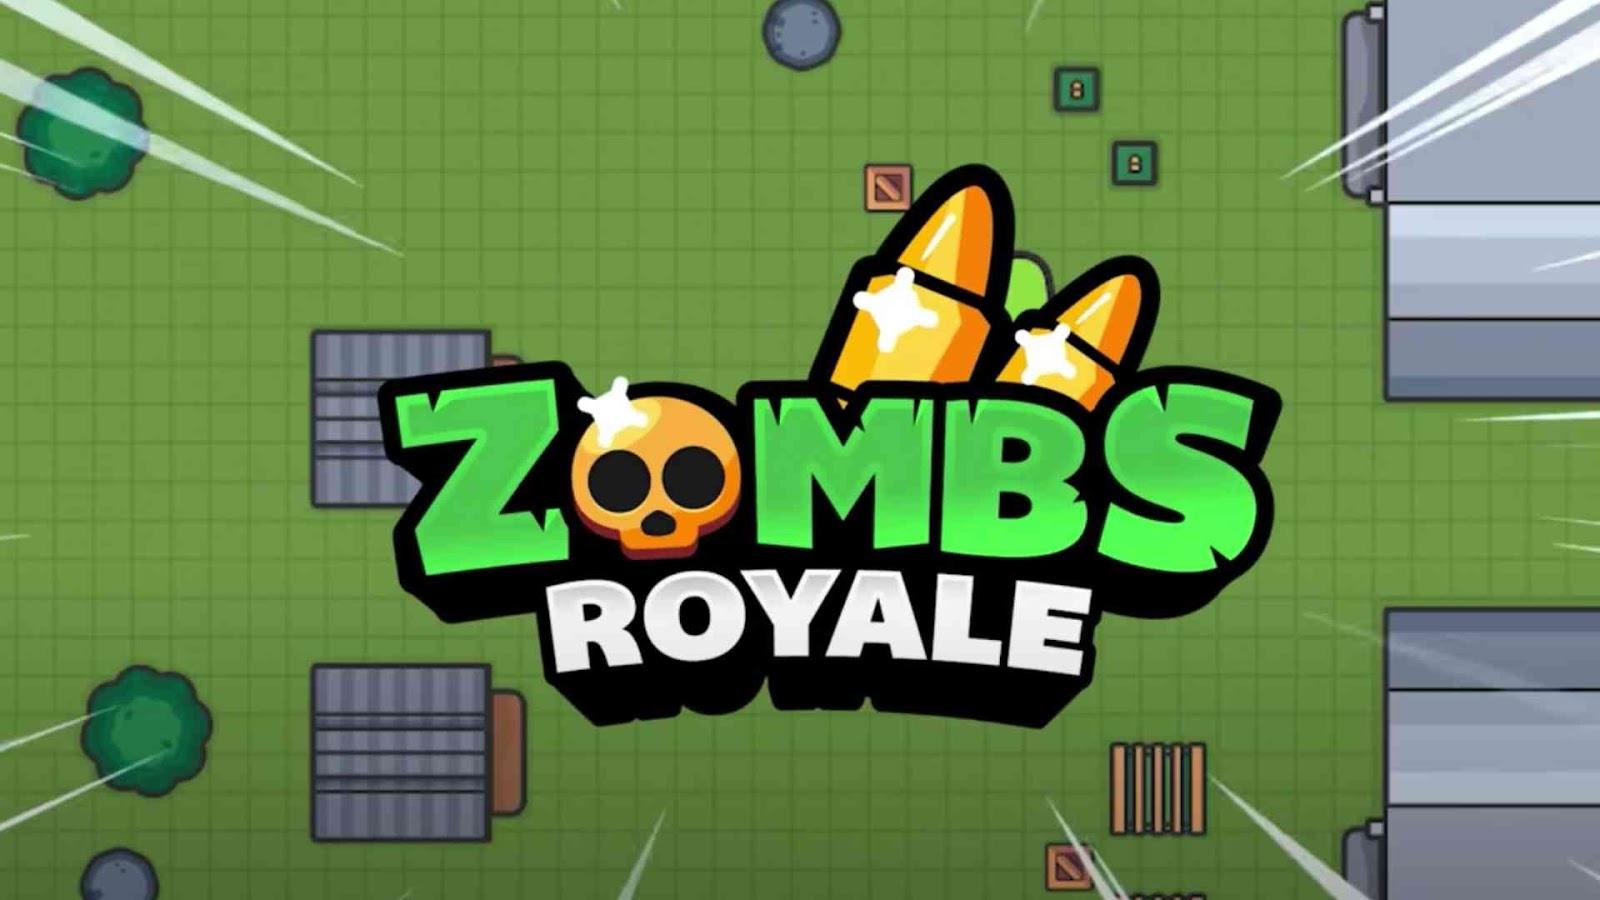 ZombsRoyale.io – Battle Royale